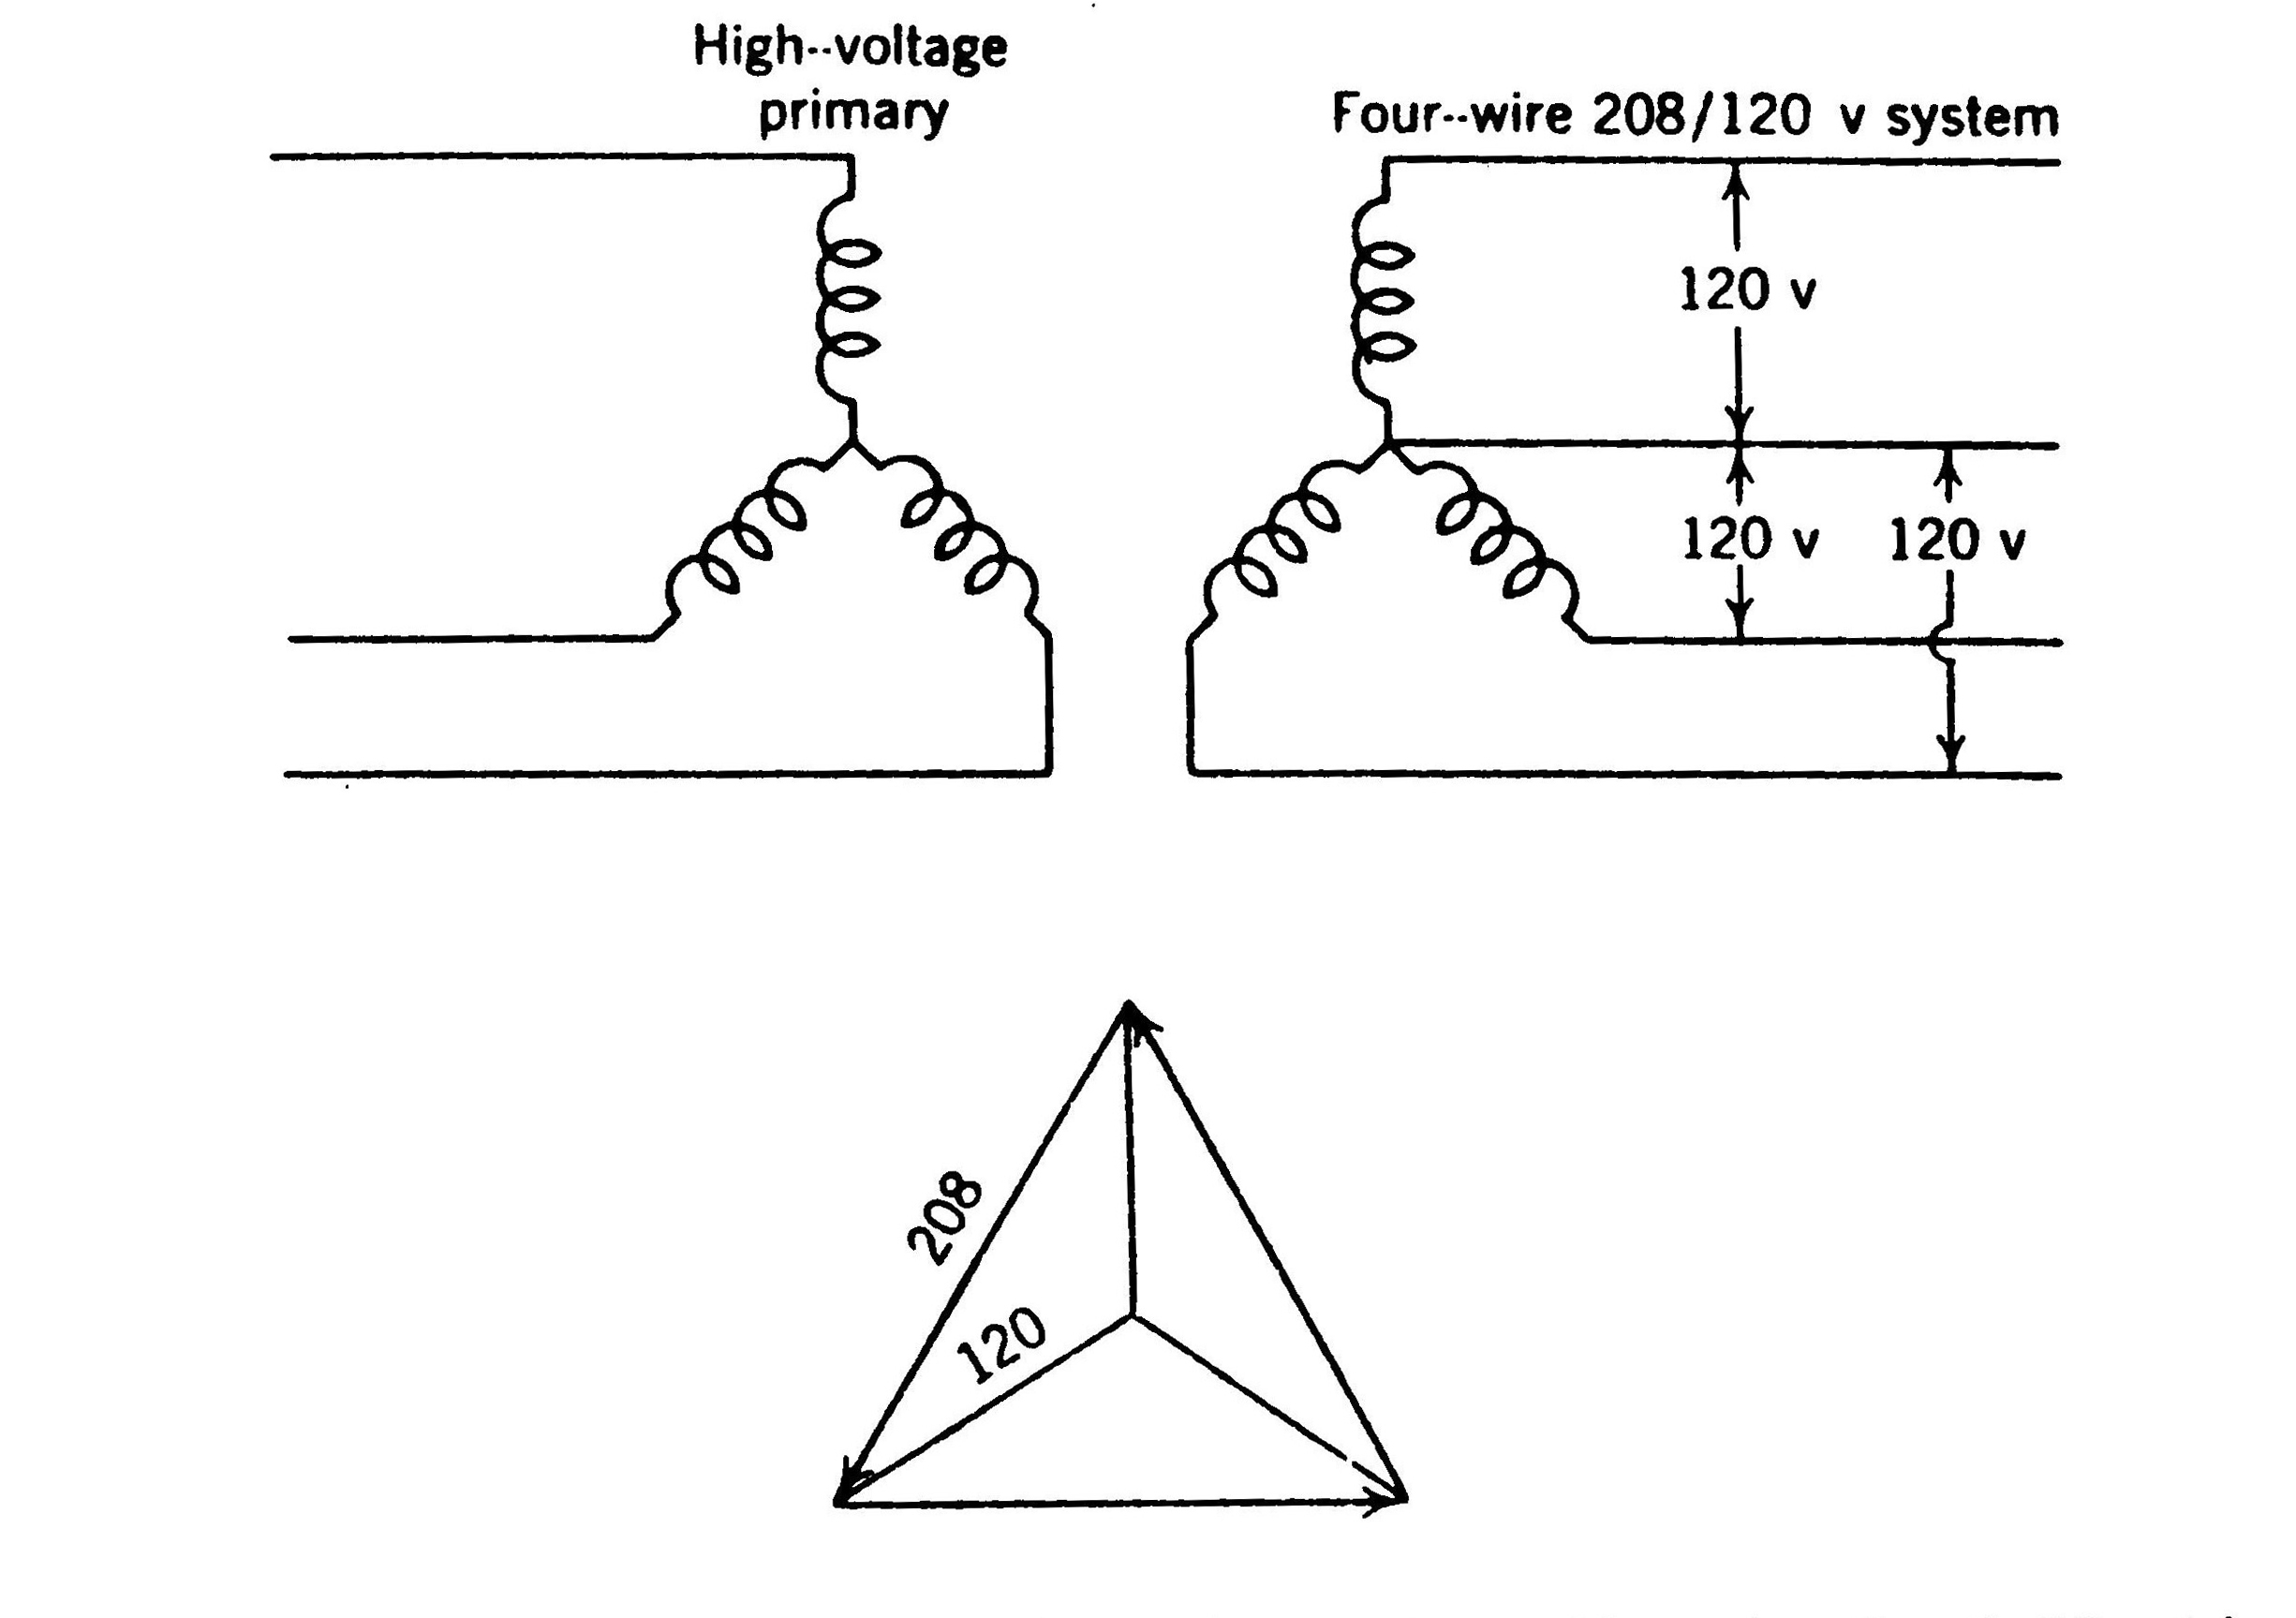 یک ترانس با نسبت تبدیل مناسب، ولتاژ سیستم ستارۀ چهار سیمه و سه فاز را به 120 ولت در هر فاز و 208 ولت بین هر دو خط کاهش می دهد